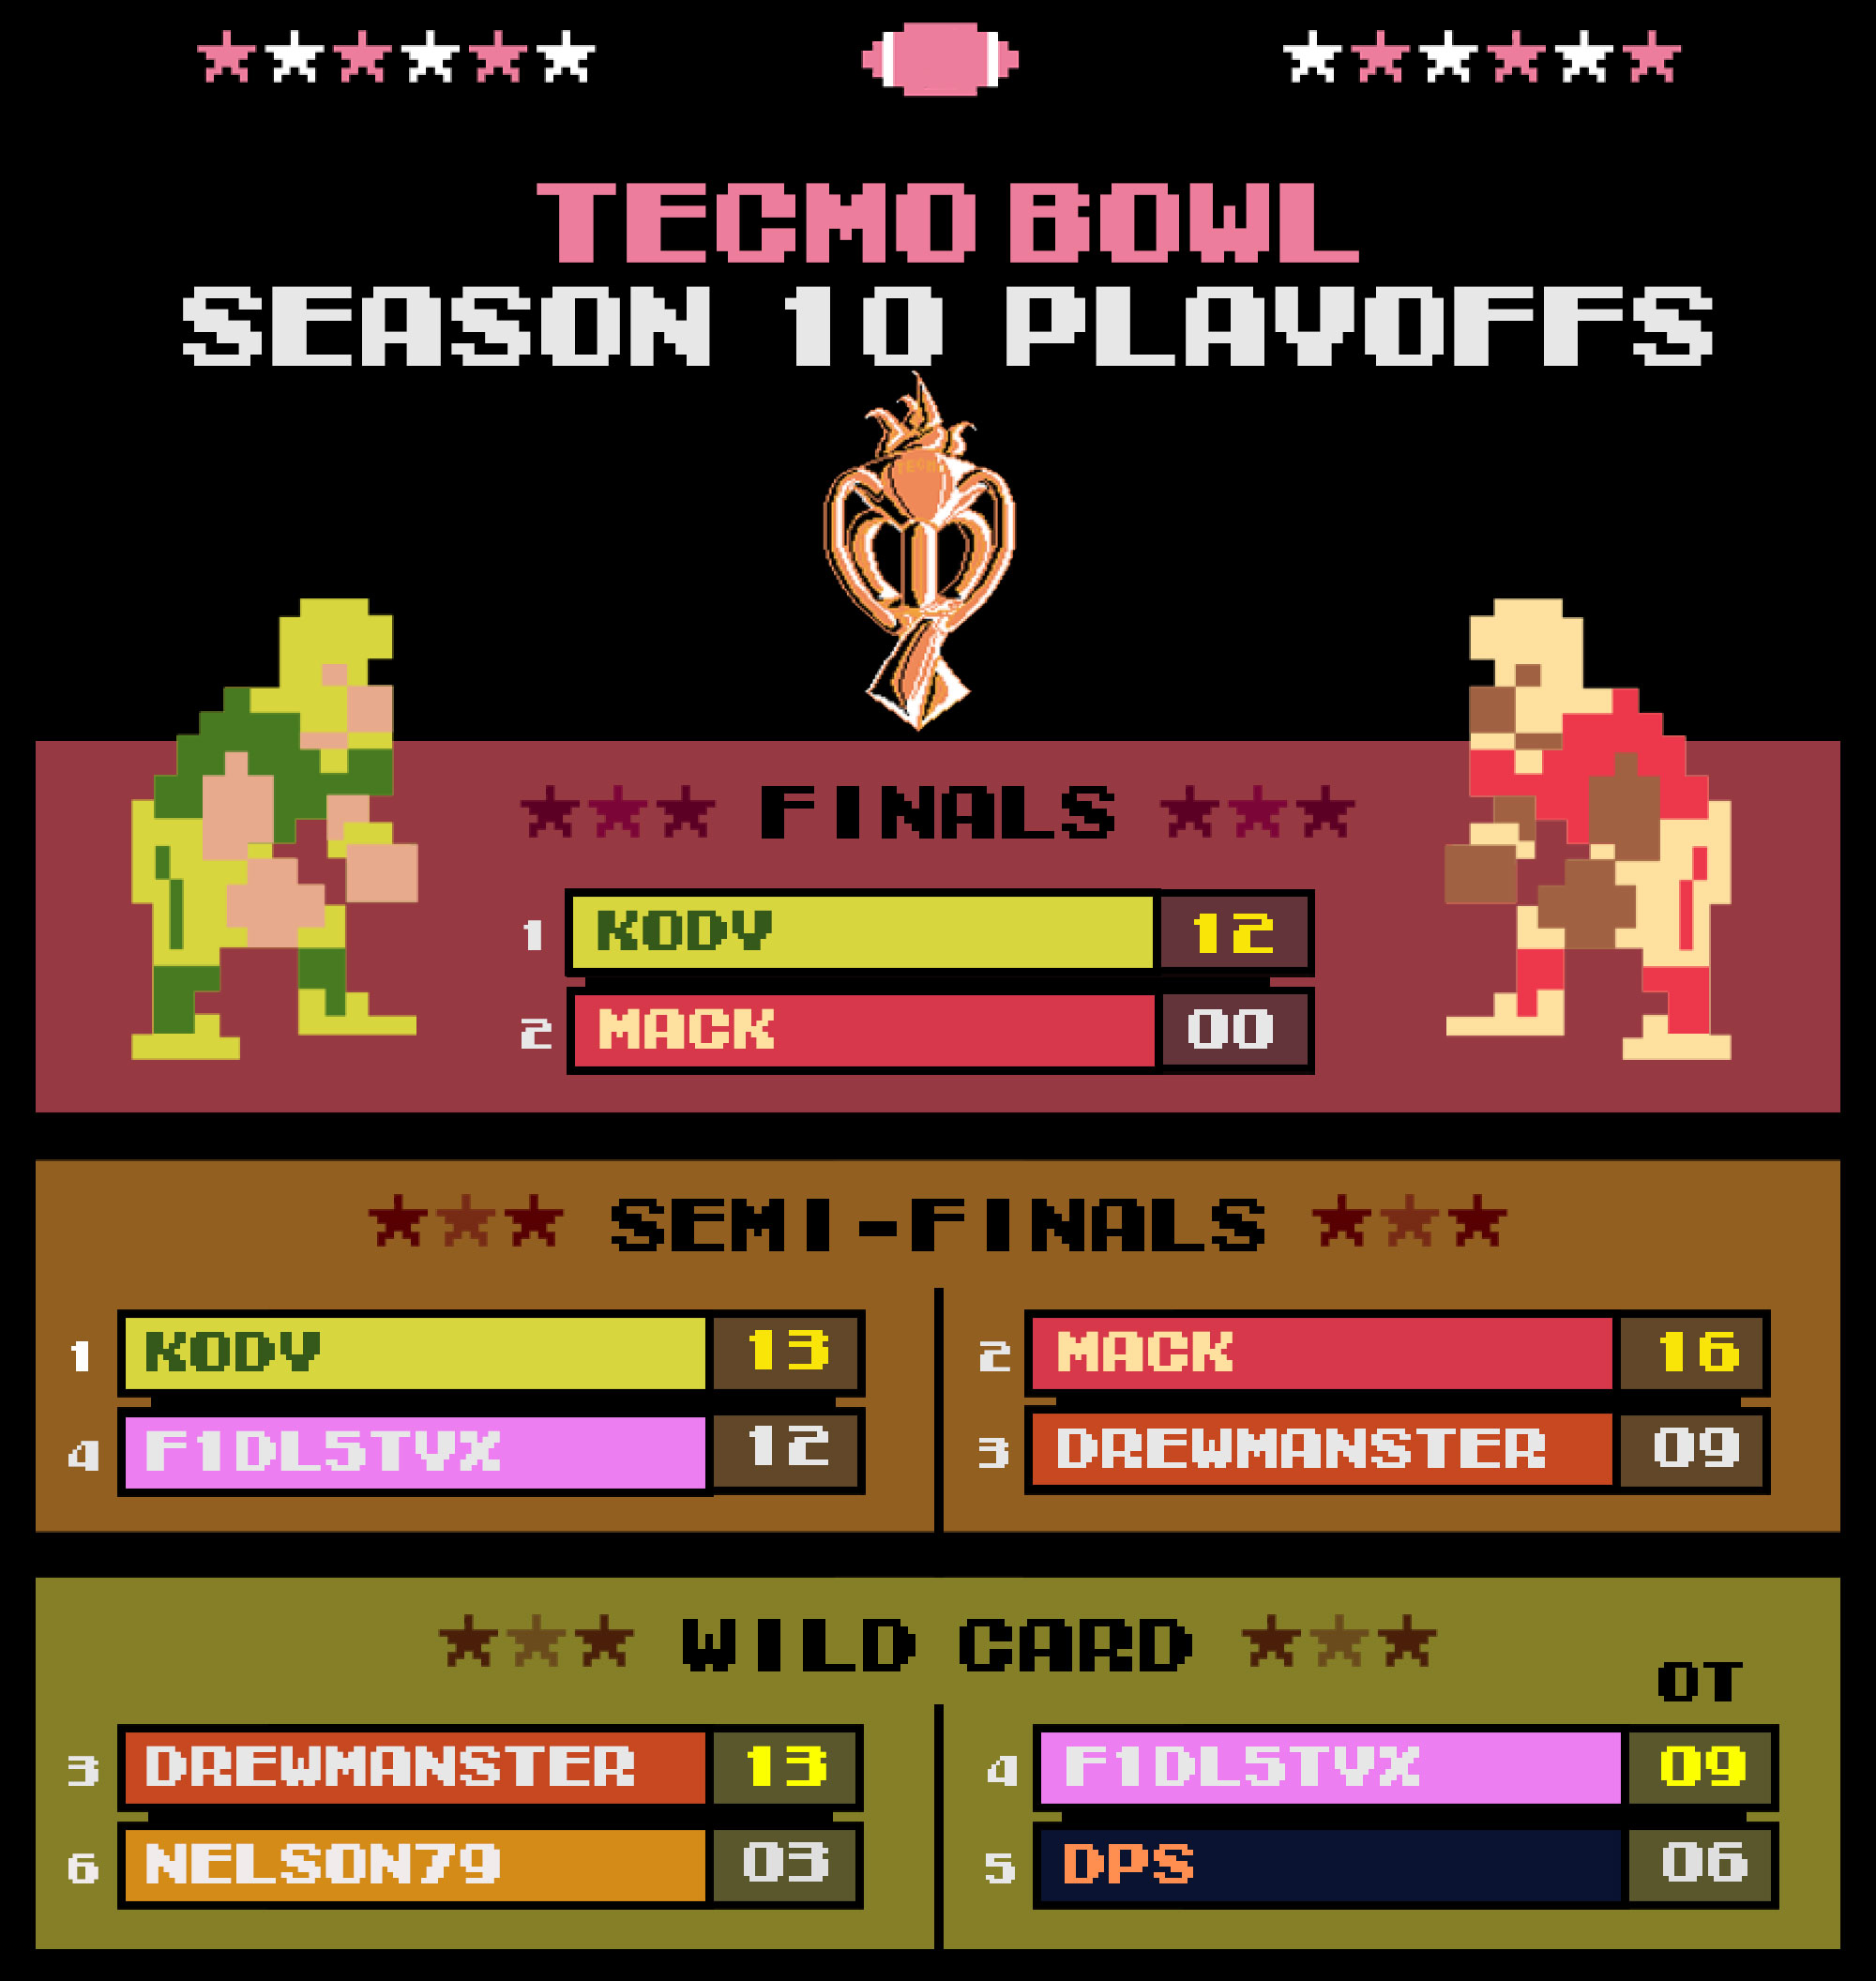 Season 10 Playoffs | Tecmo Bowl League